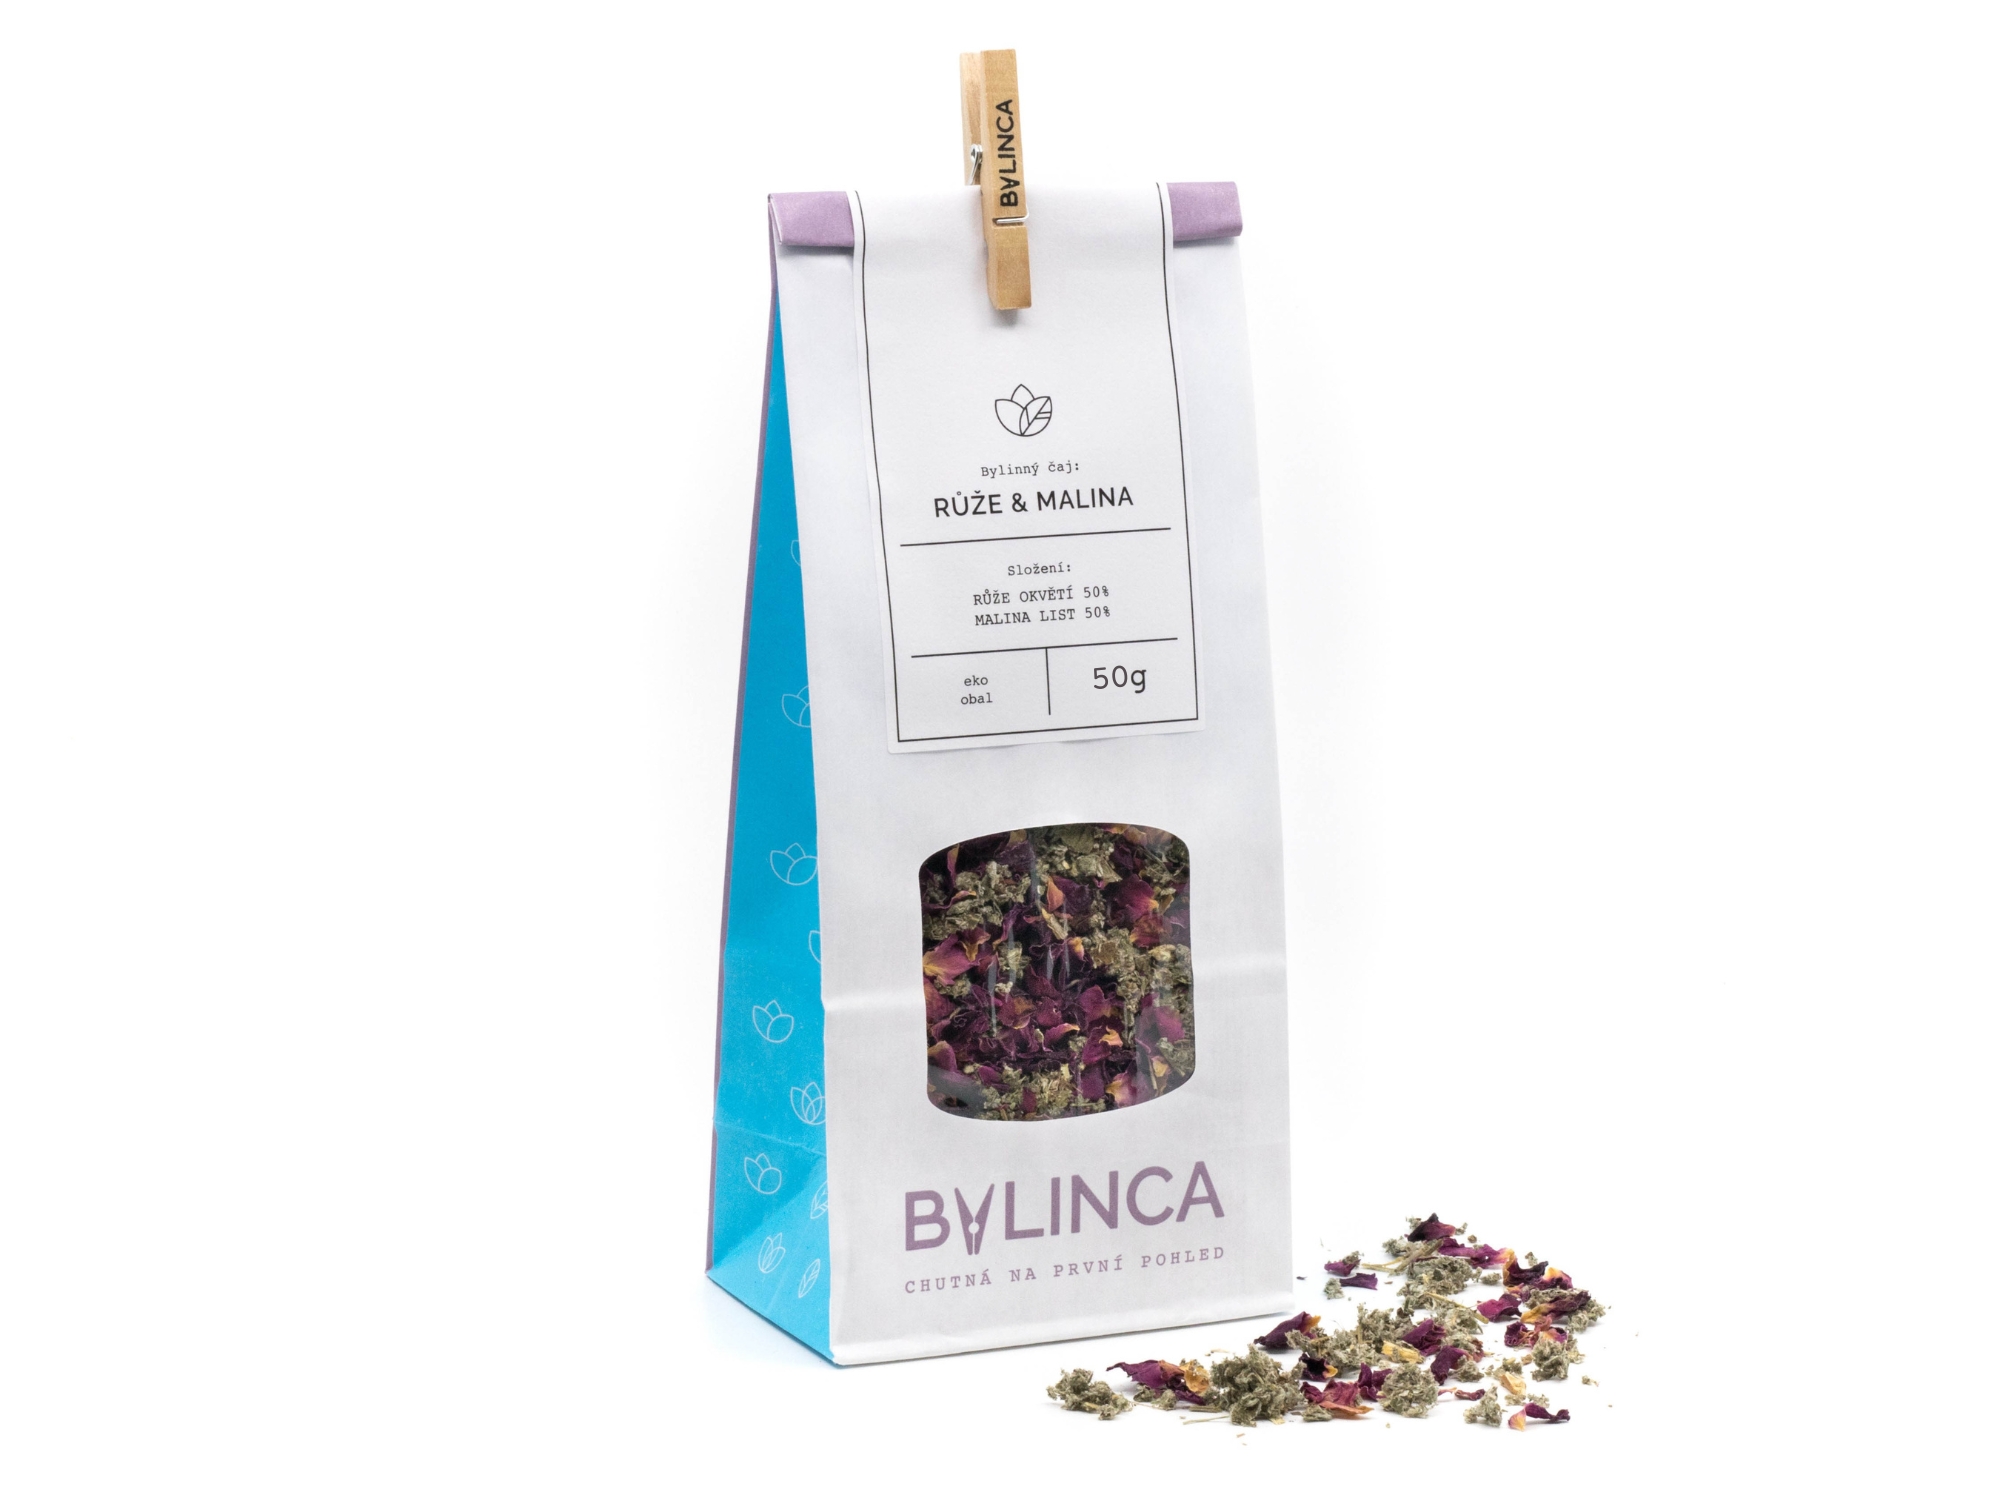 BYLINCA Bylinný čaj: Růže & Malina 50g